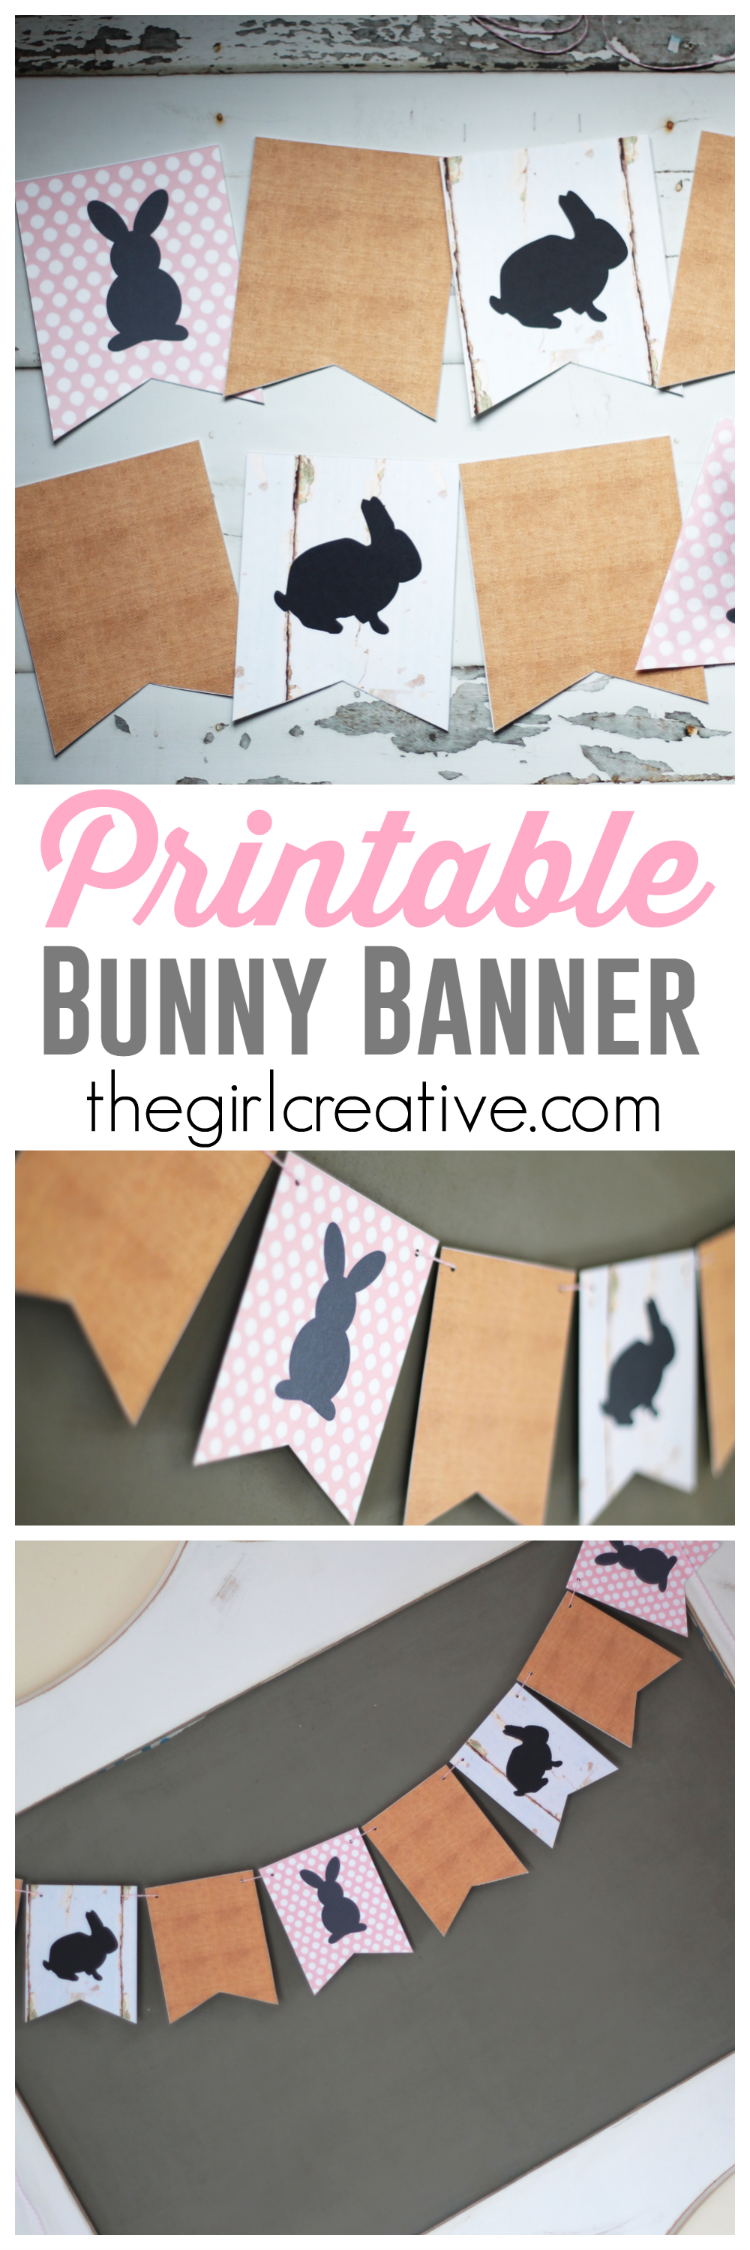 Printable Bunny Banner